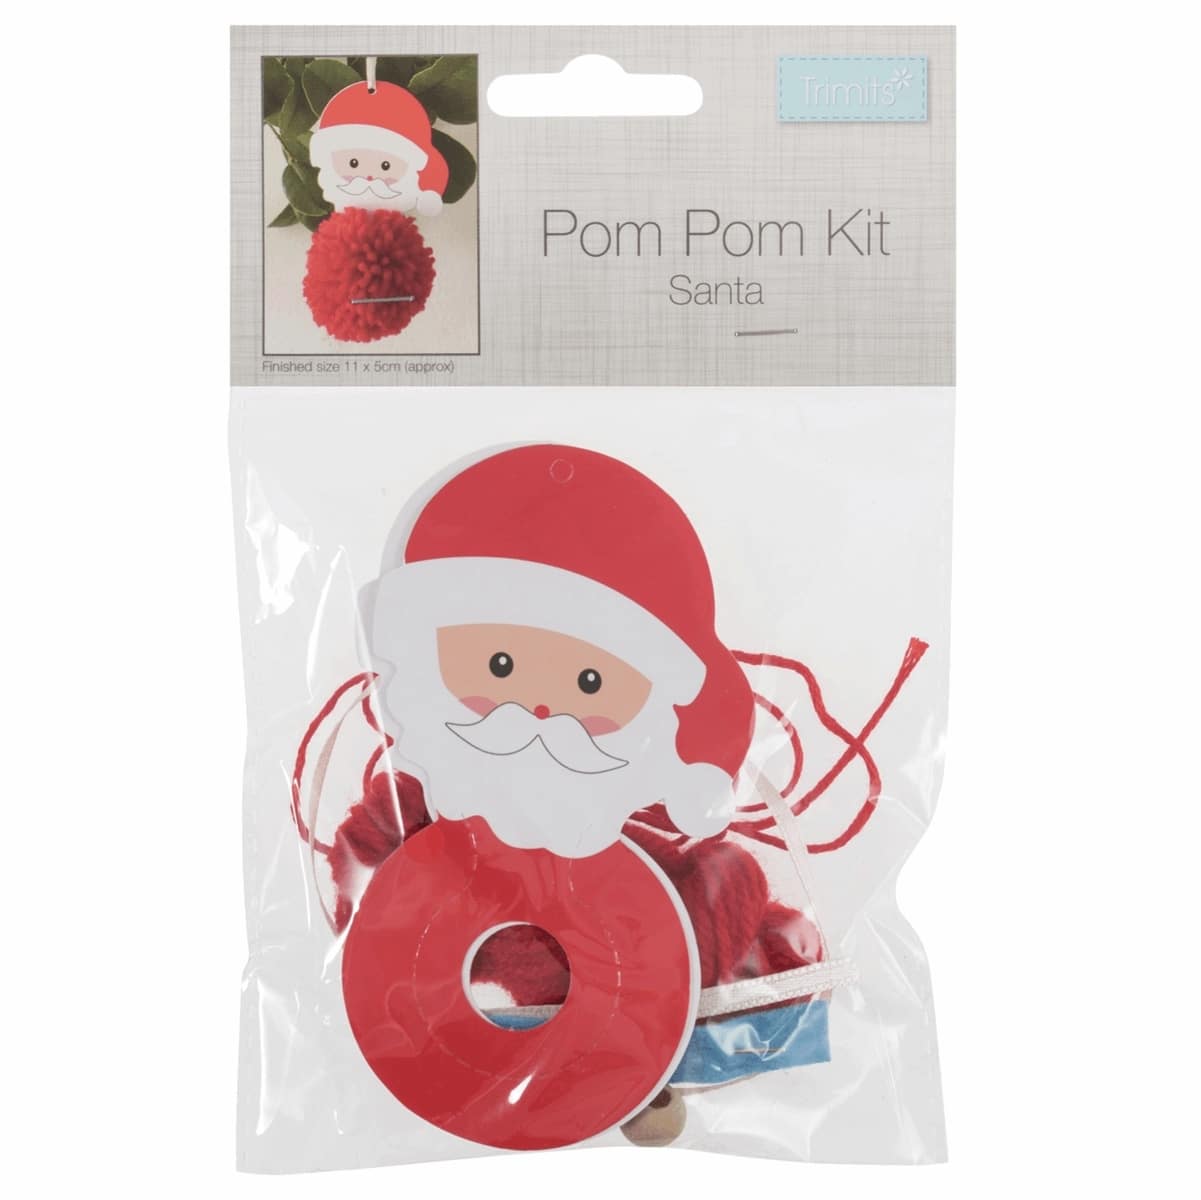 Pom Pom Kit in Christmas Santa